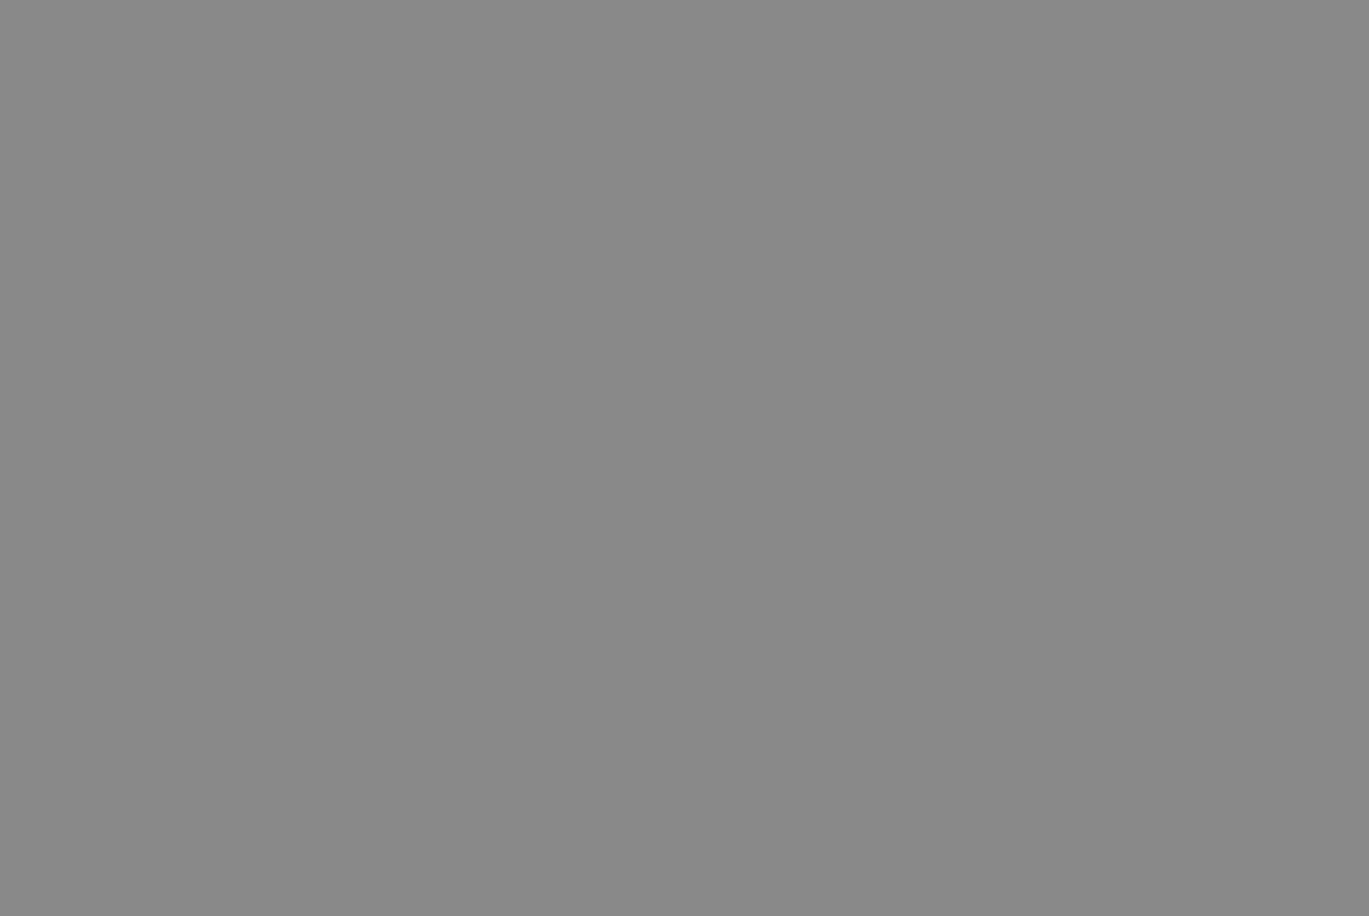 Меншиковский дворец. Архитекторы: Франческо Фонтана, Готфрид Иоганн Шедель. 1710-1760. Фотография: opeterburge.ru